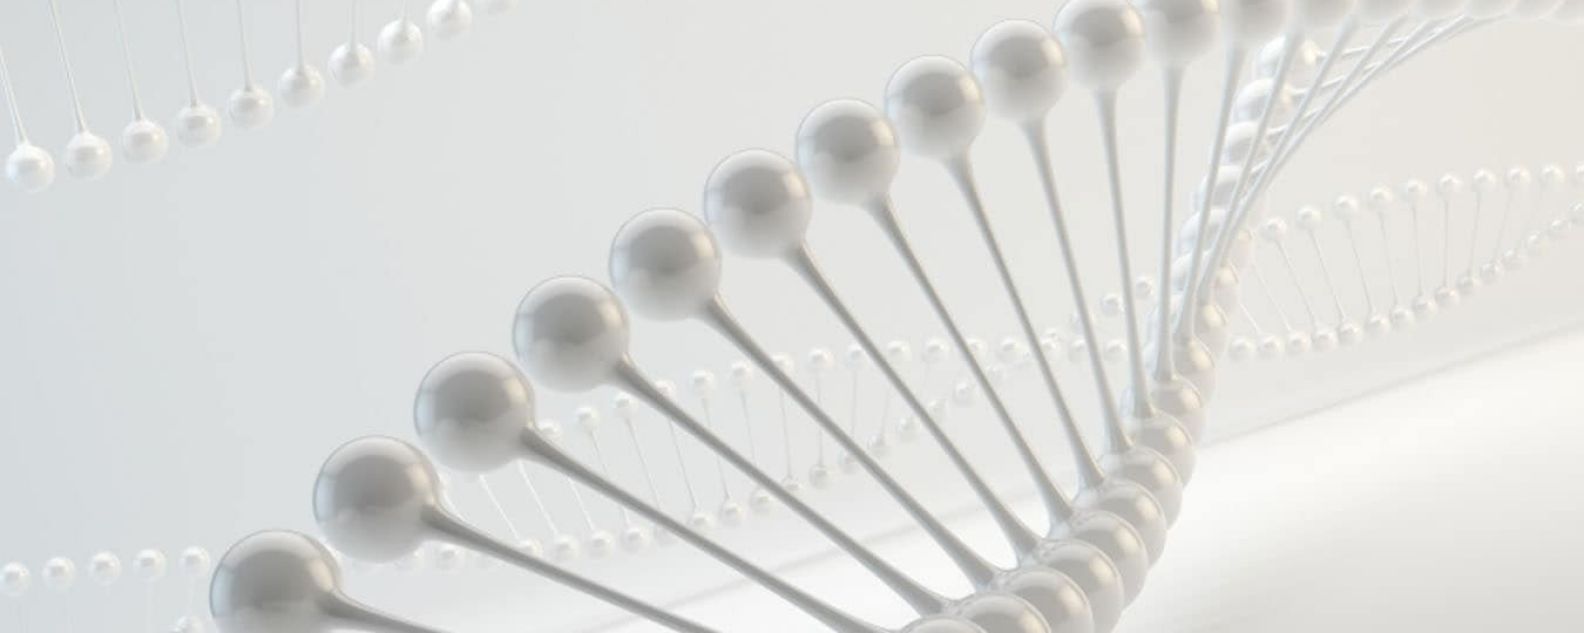 Fios de DNA em vidro 3D contra fundo cinza